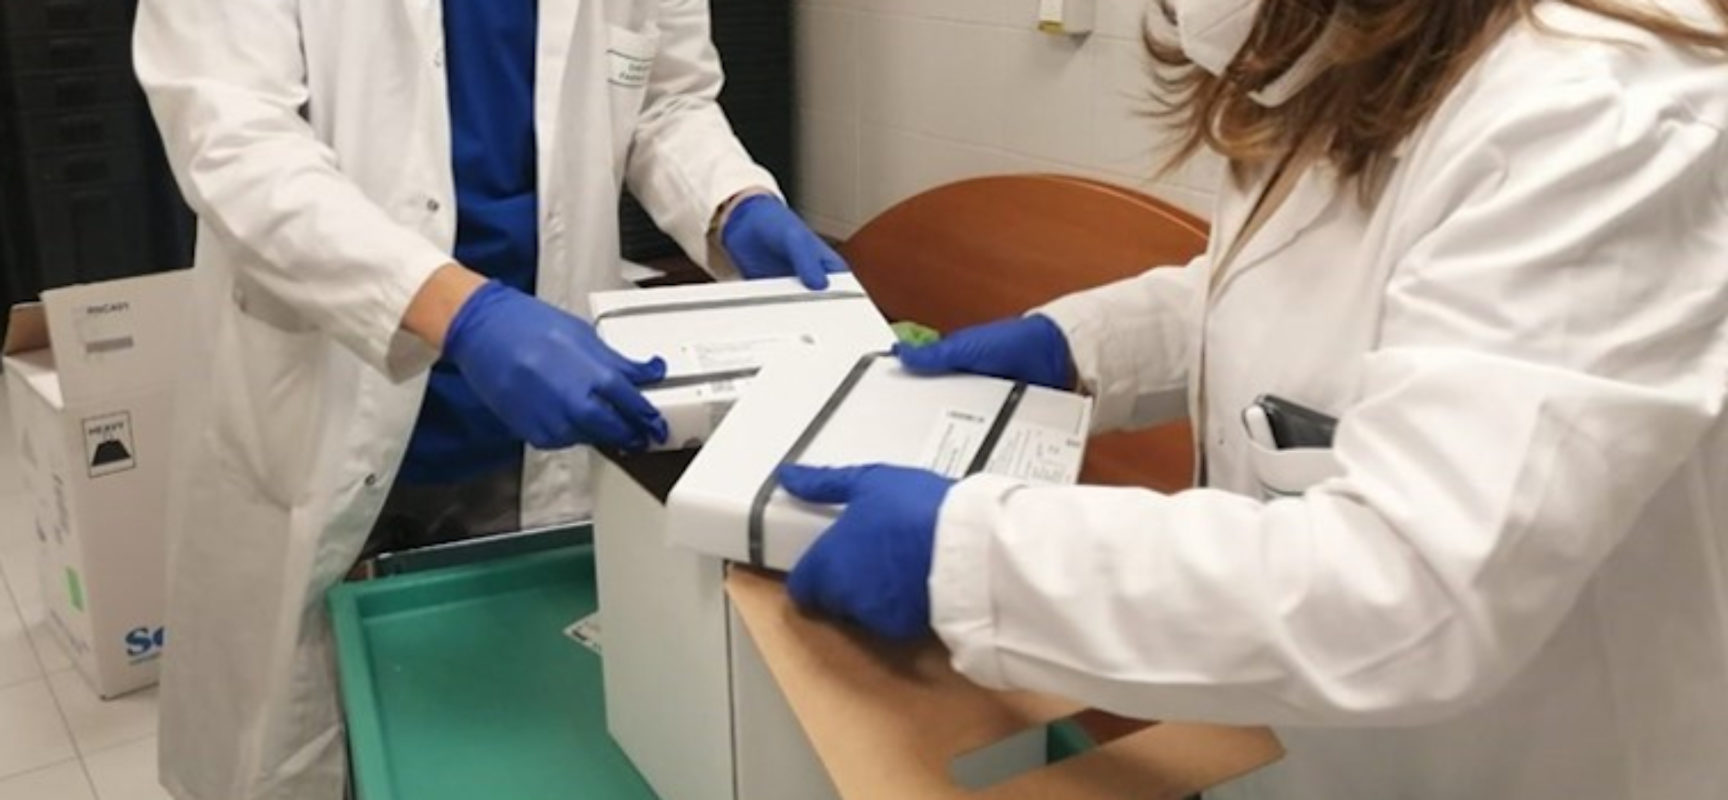 Vaccini, Lopalco: “Tutti gli over 80 prenotati riceveranno prima dose entro marzo”